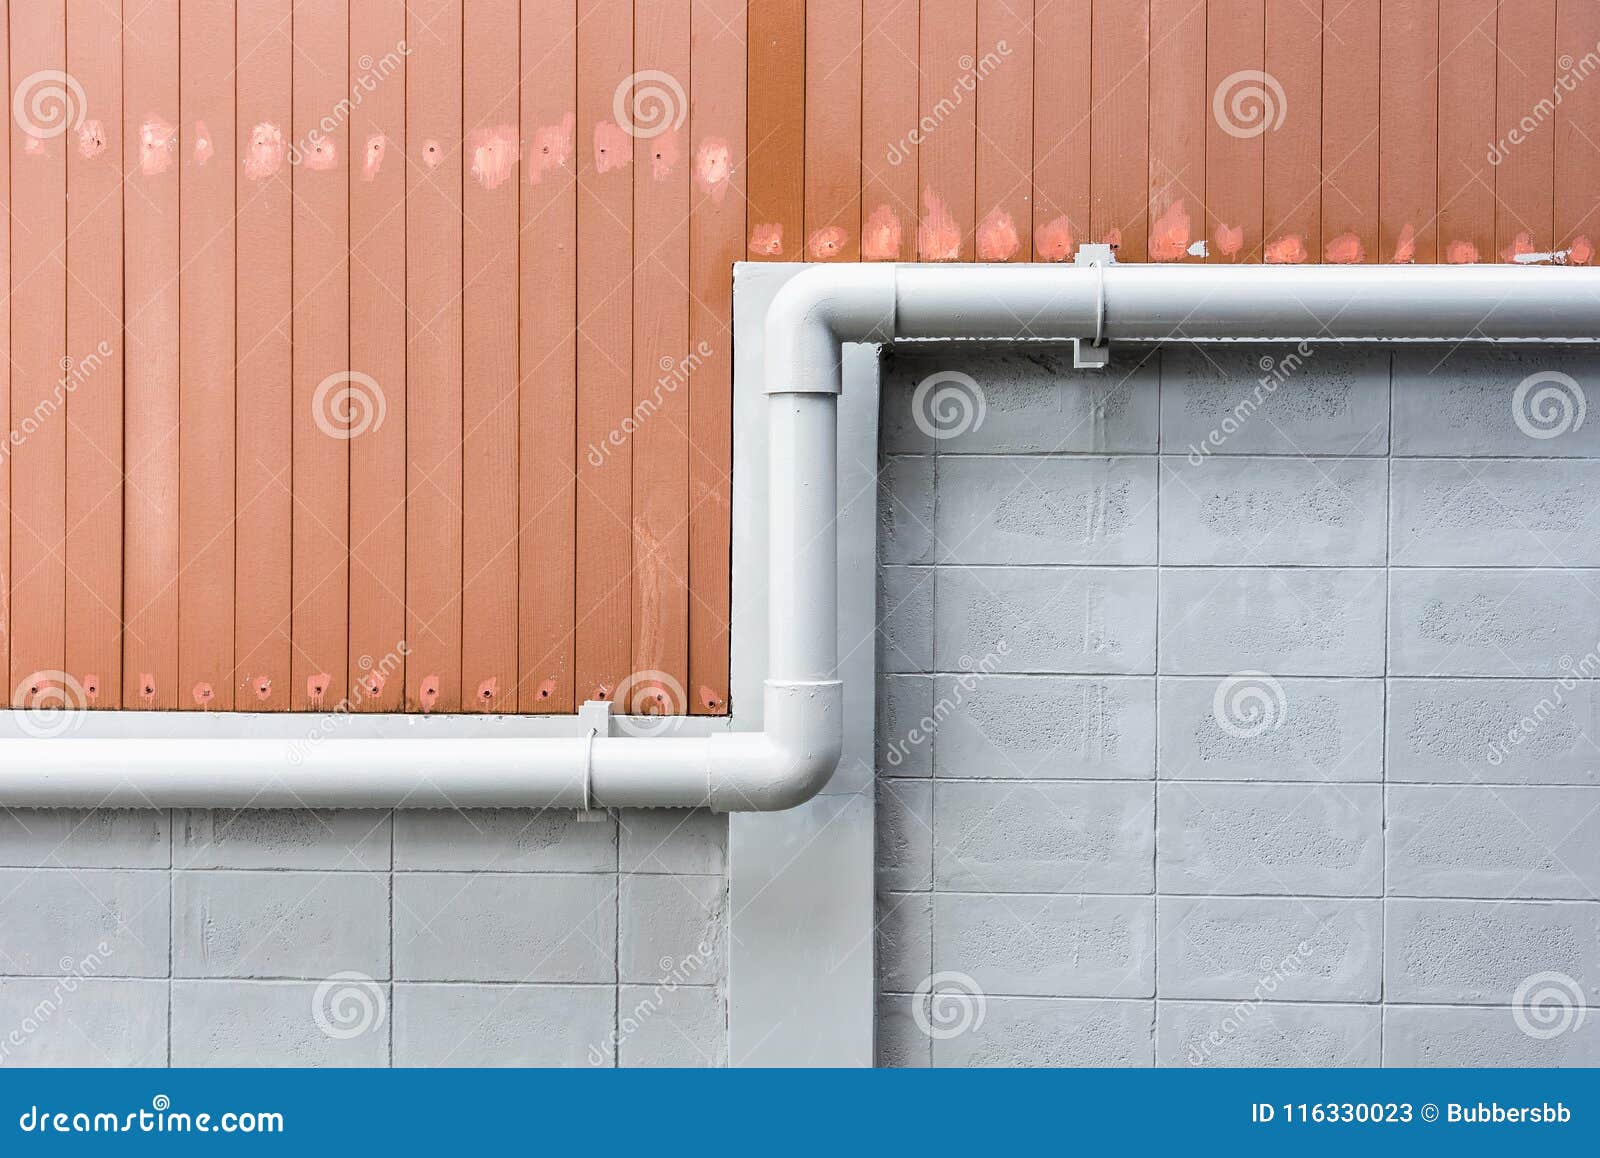 Vattenrör på cementväggen av byggnad